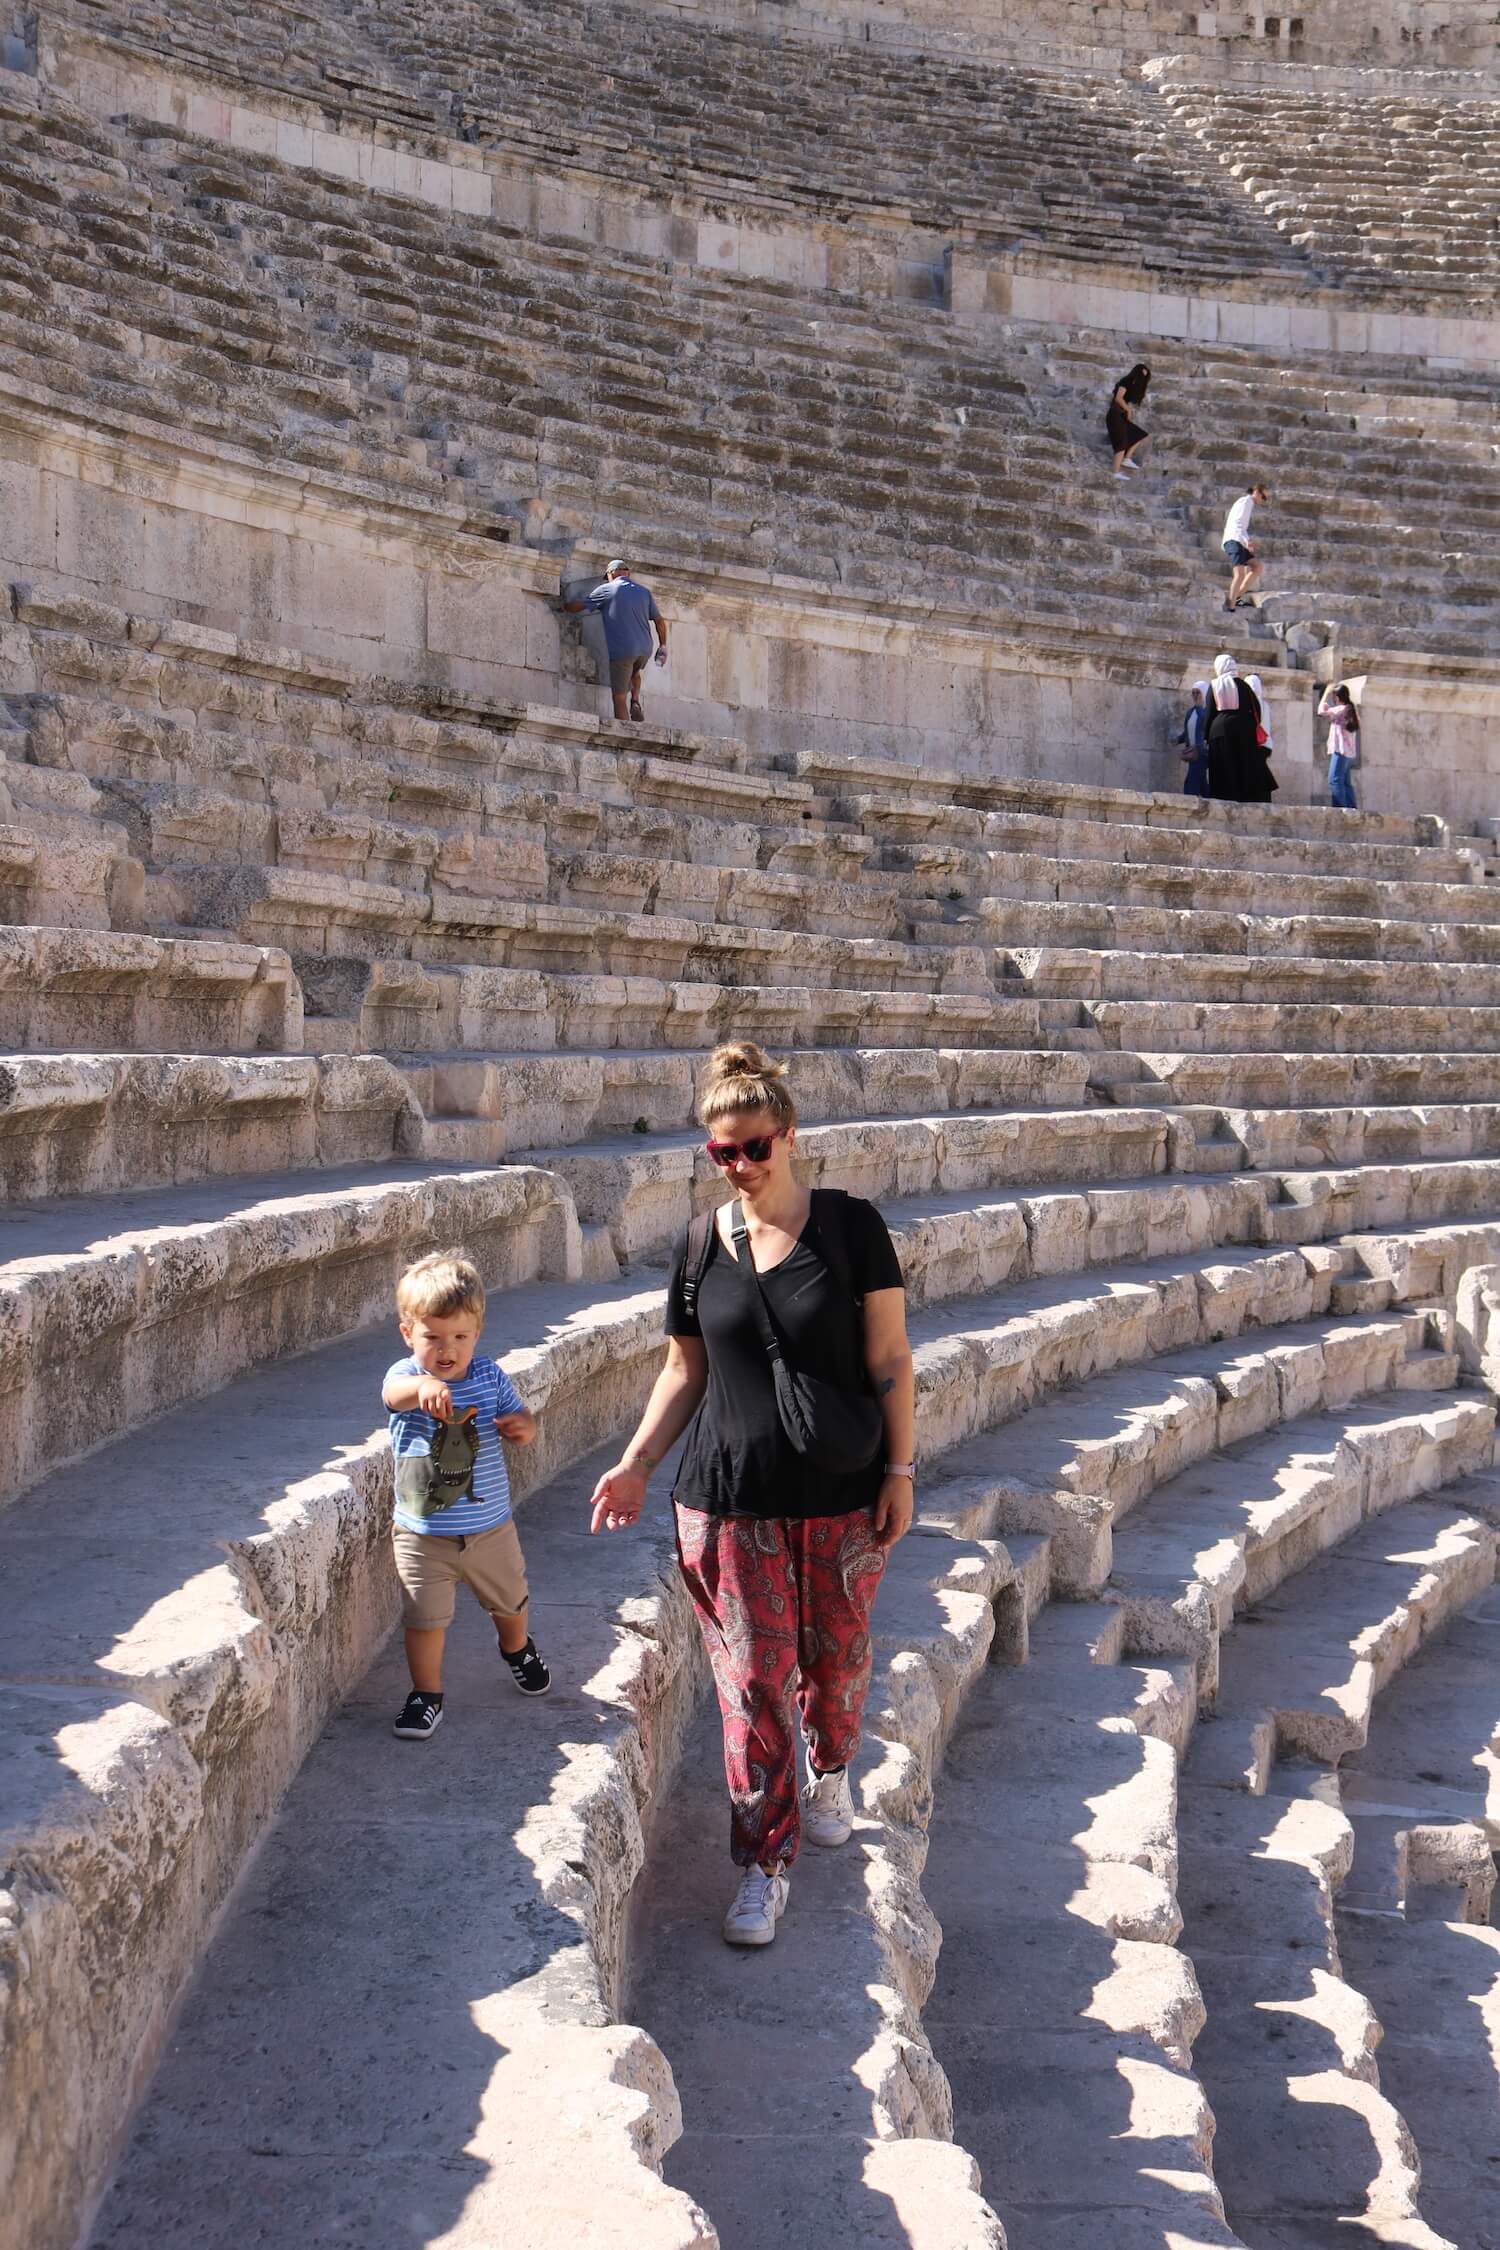 Roman theater in Amman